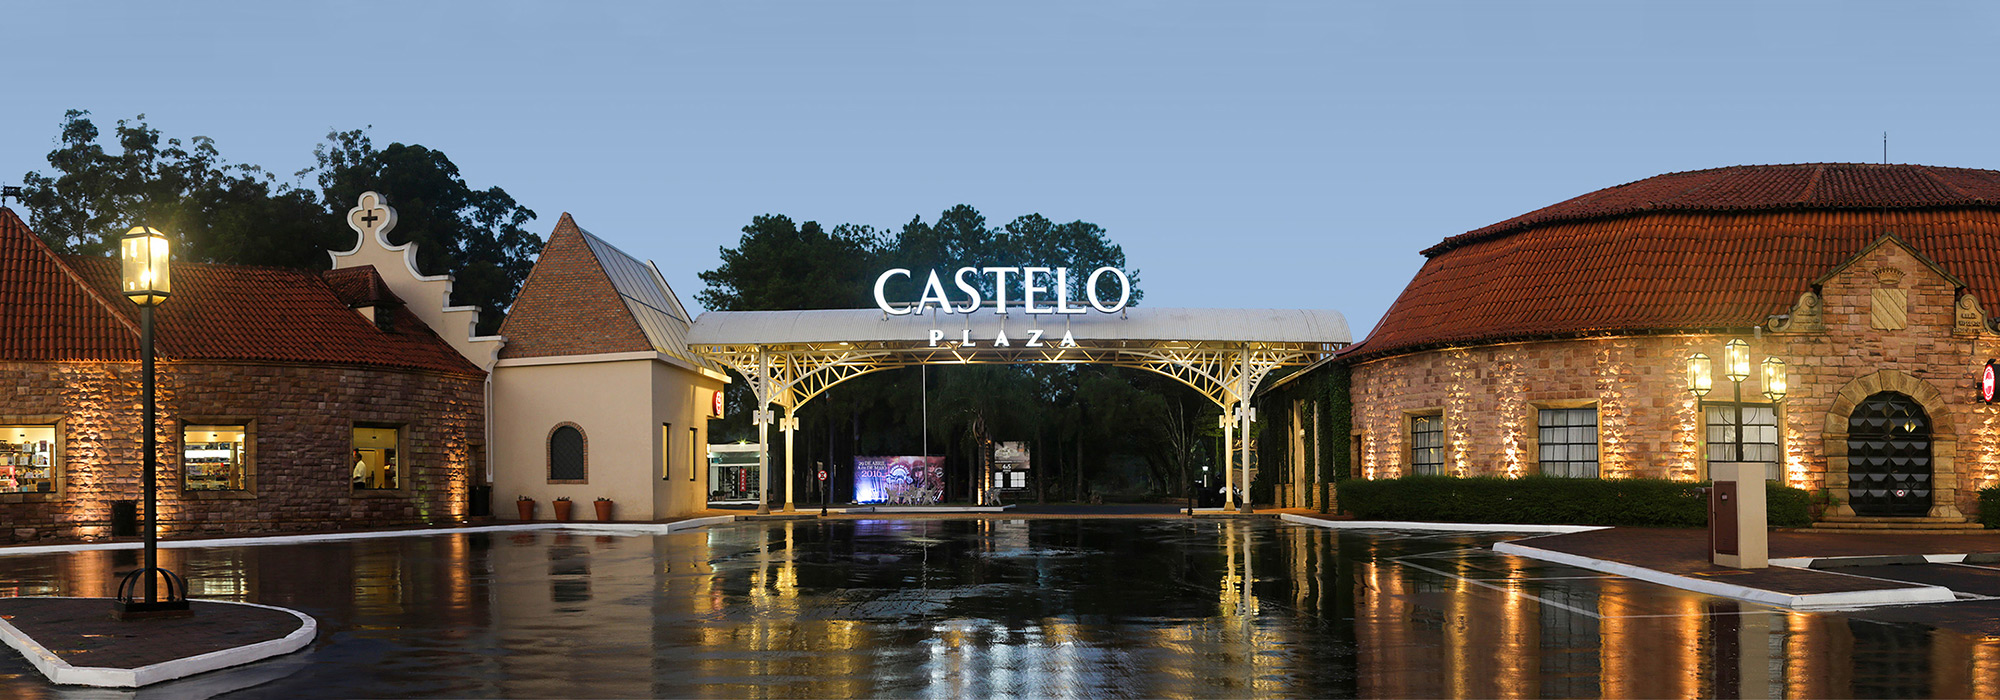 Bem-vindo ao Castelo Plaza